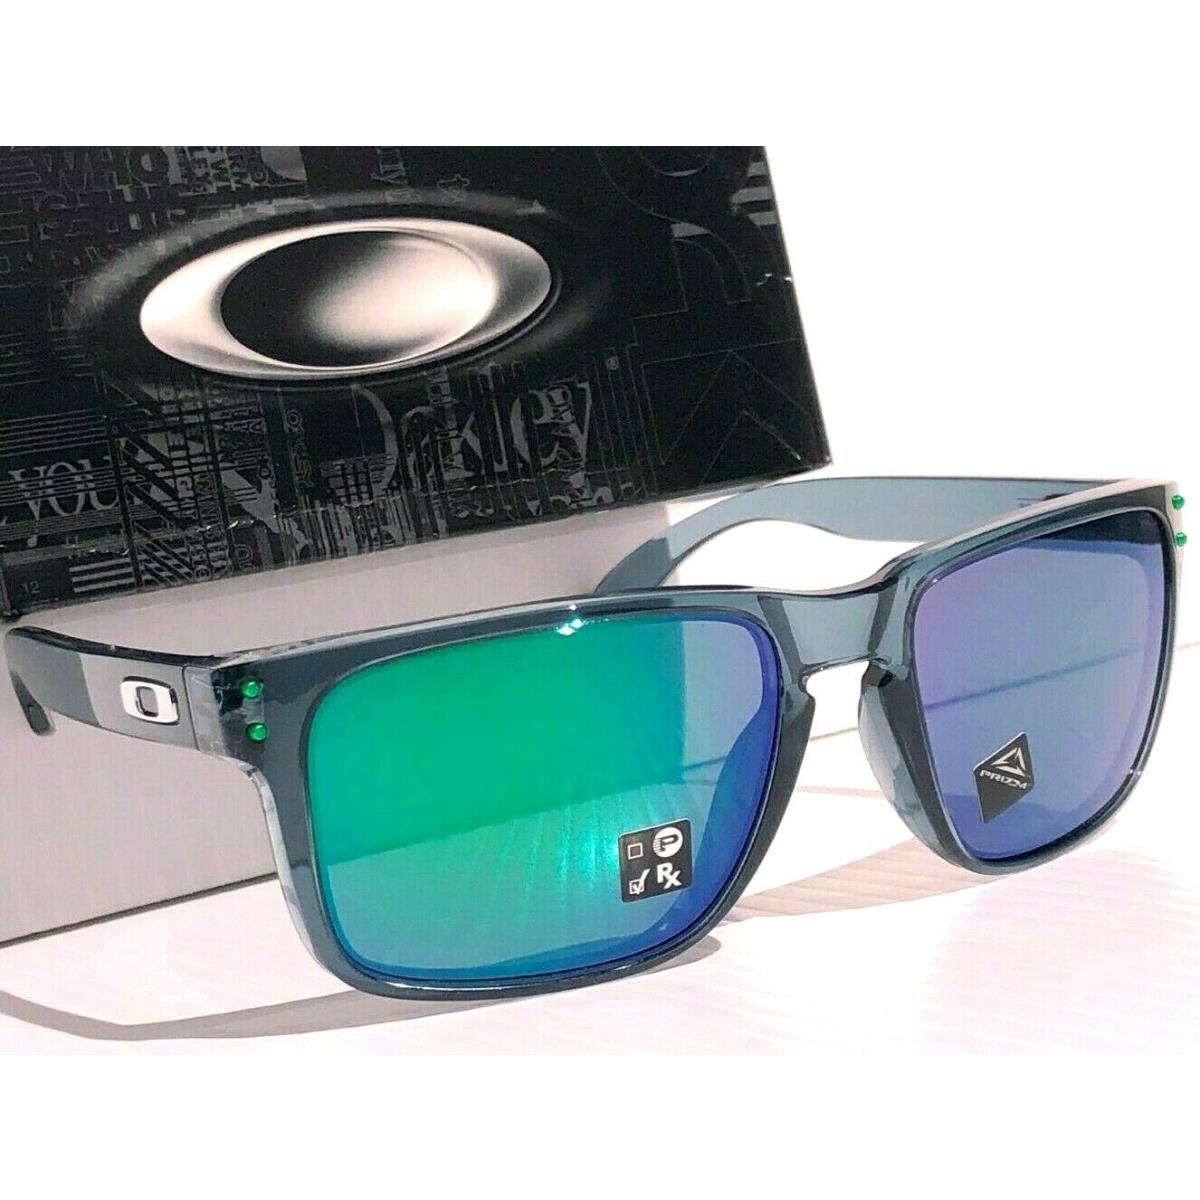 Oakley sunglasses Holbrook - Gray Frame, Green Lens